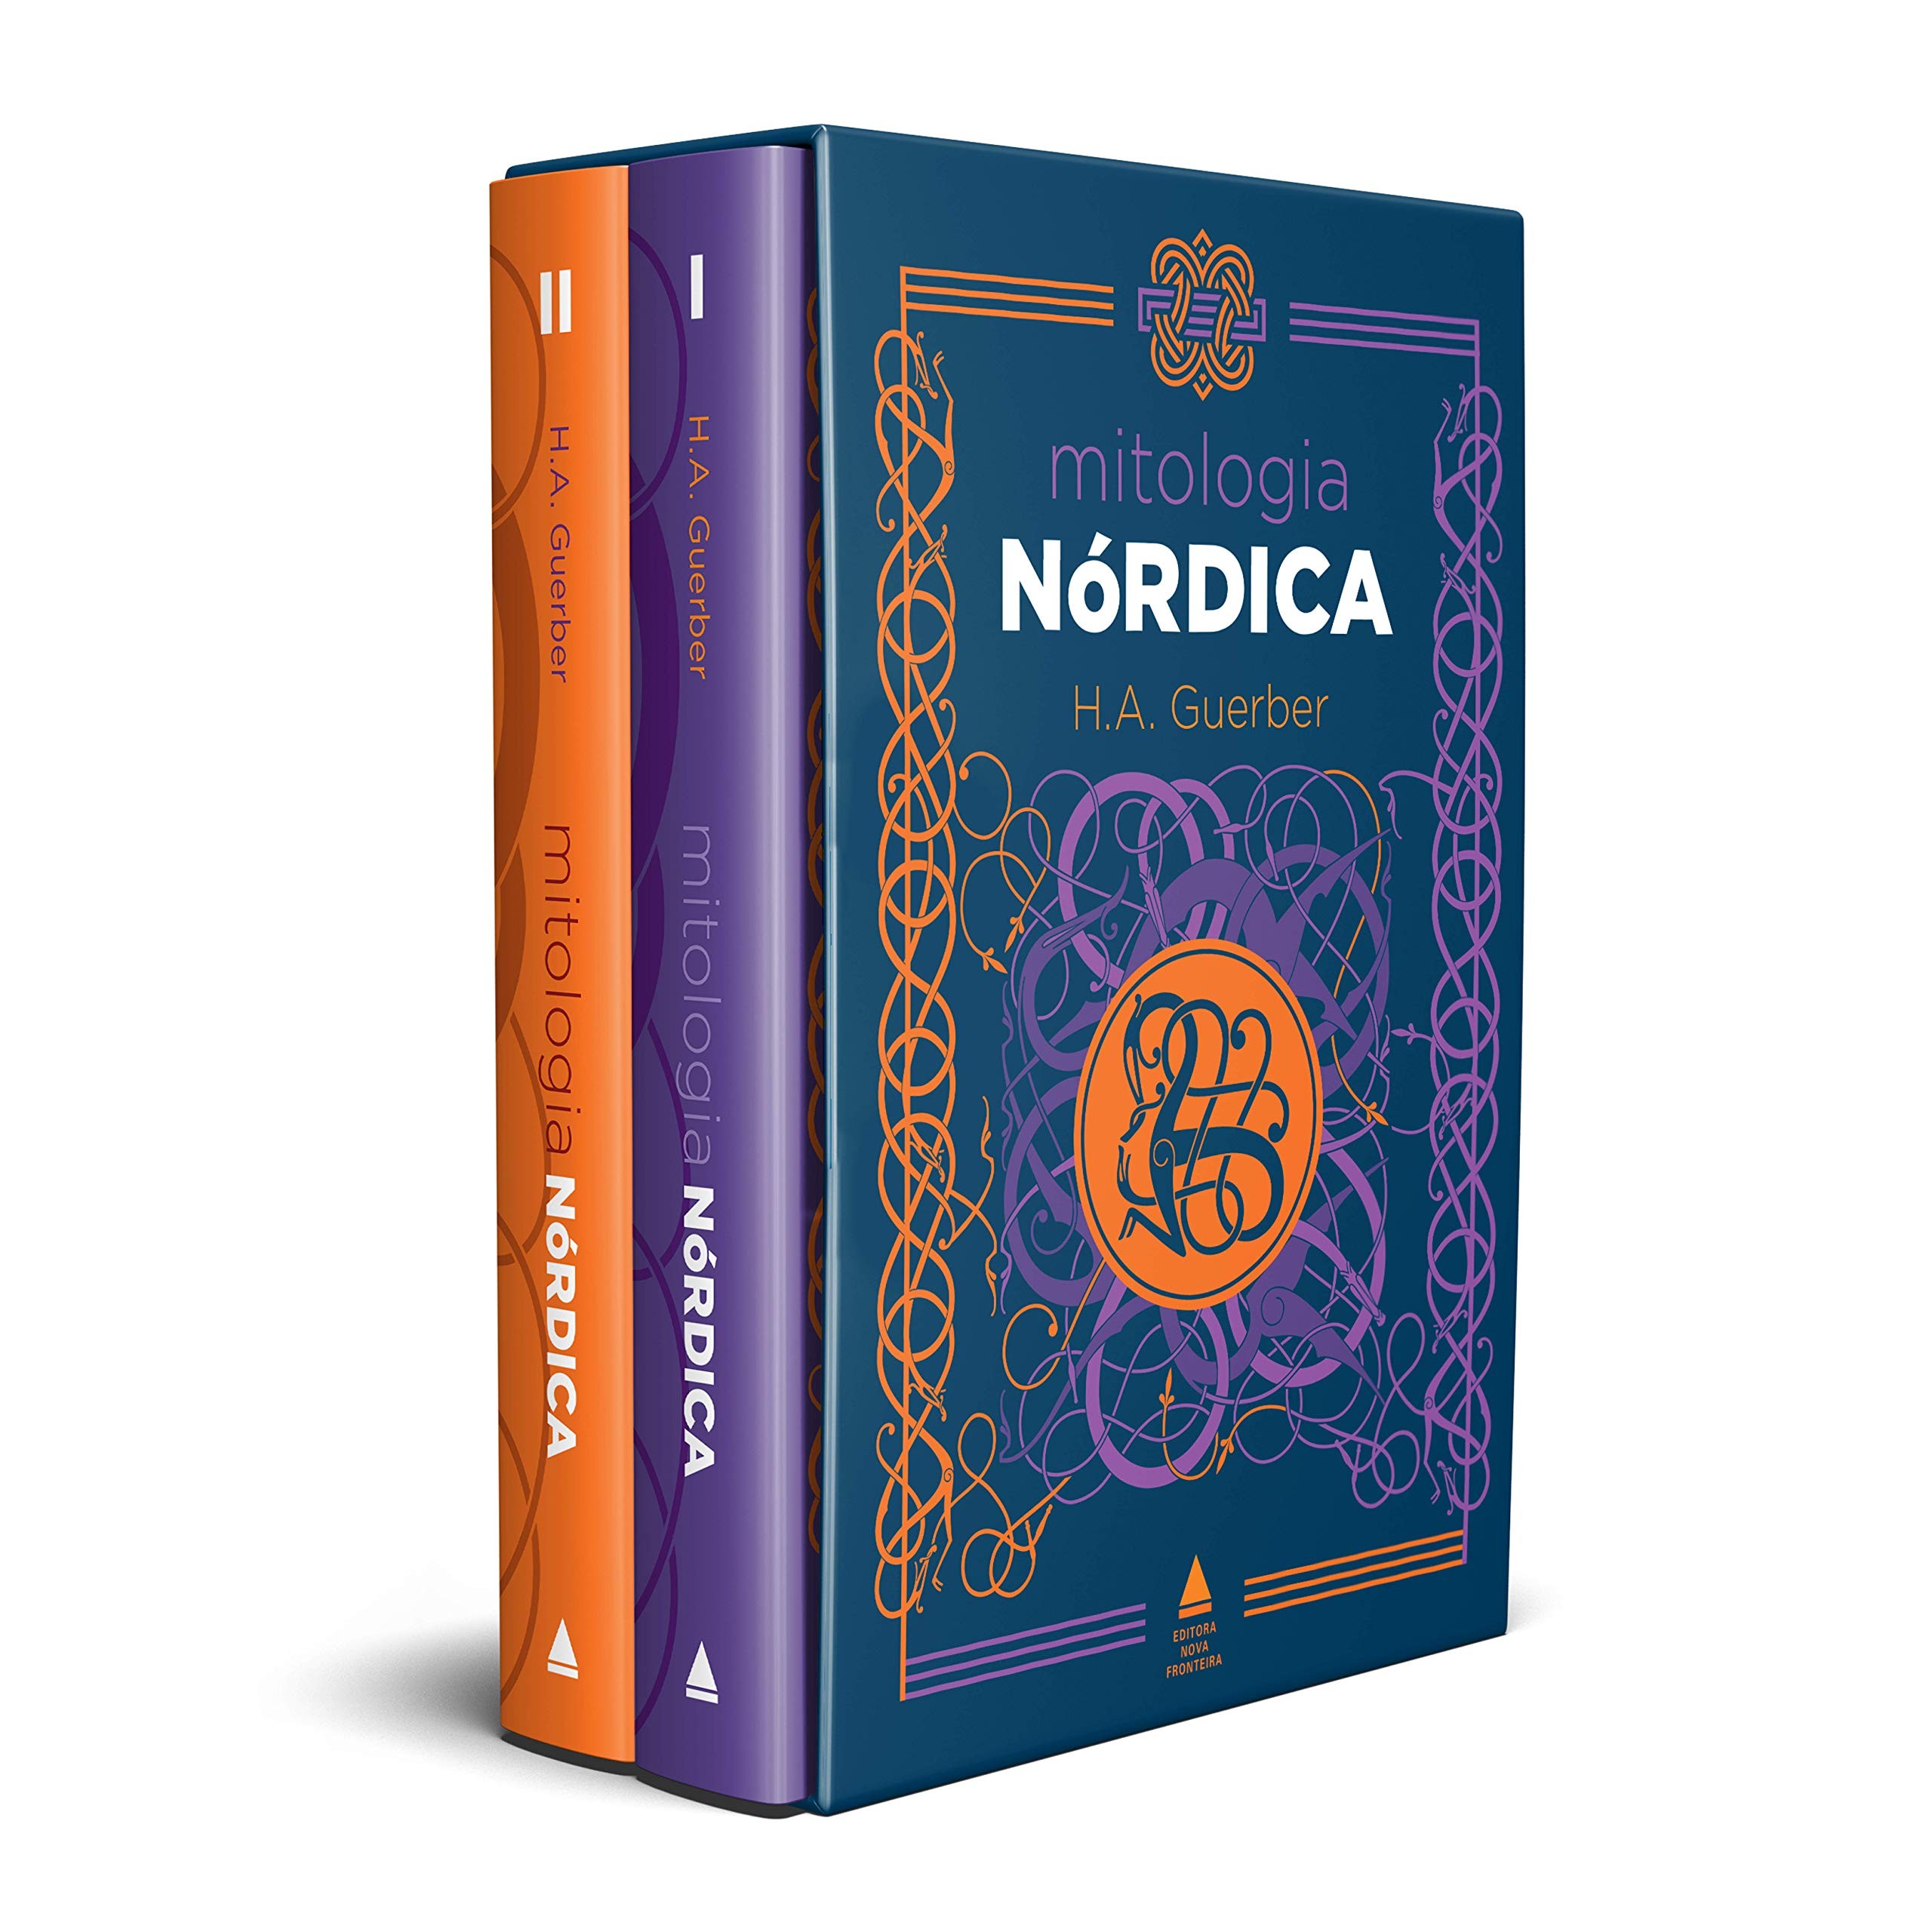 Mitologia nórdica, de H. A. Guerber (Editora Nova Fronteira, 456 páginas, R$ 149,90) (Foto: Divulgação)